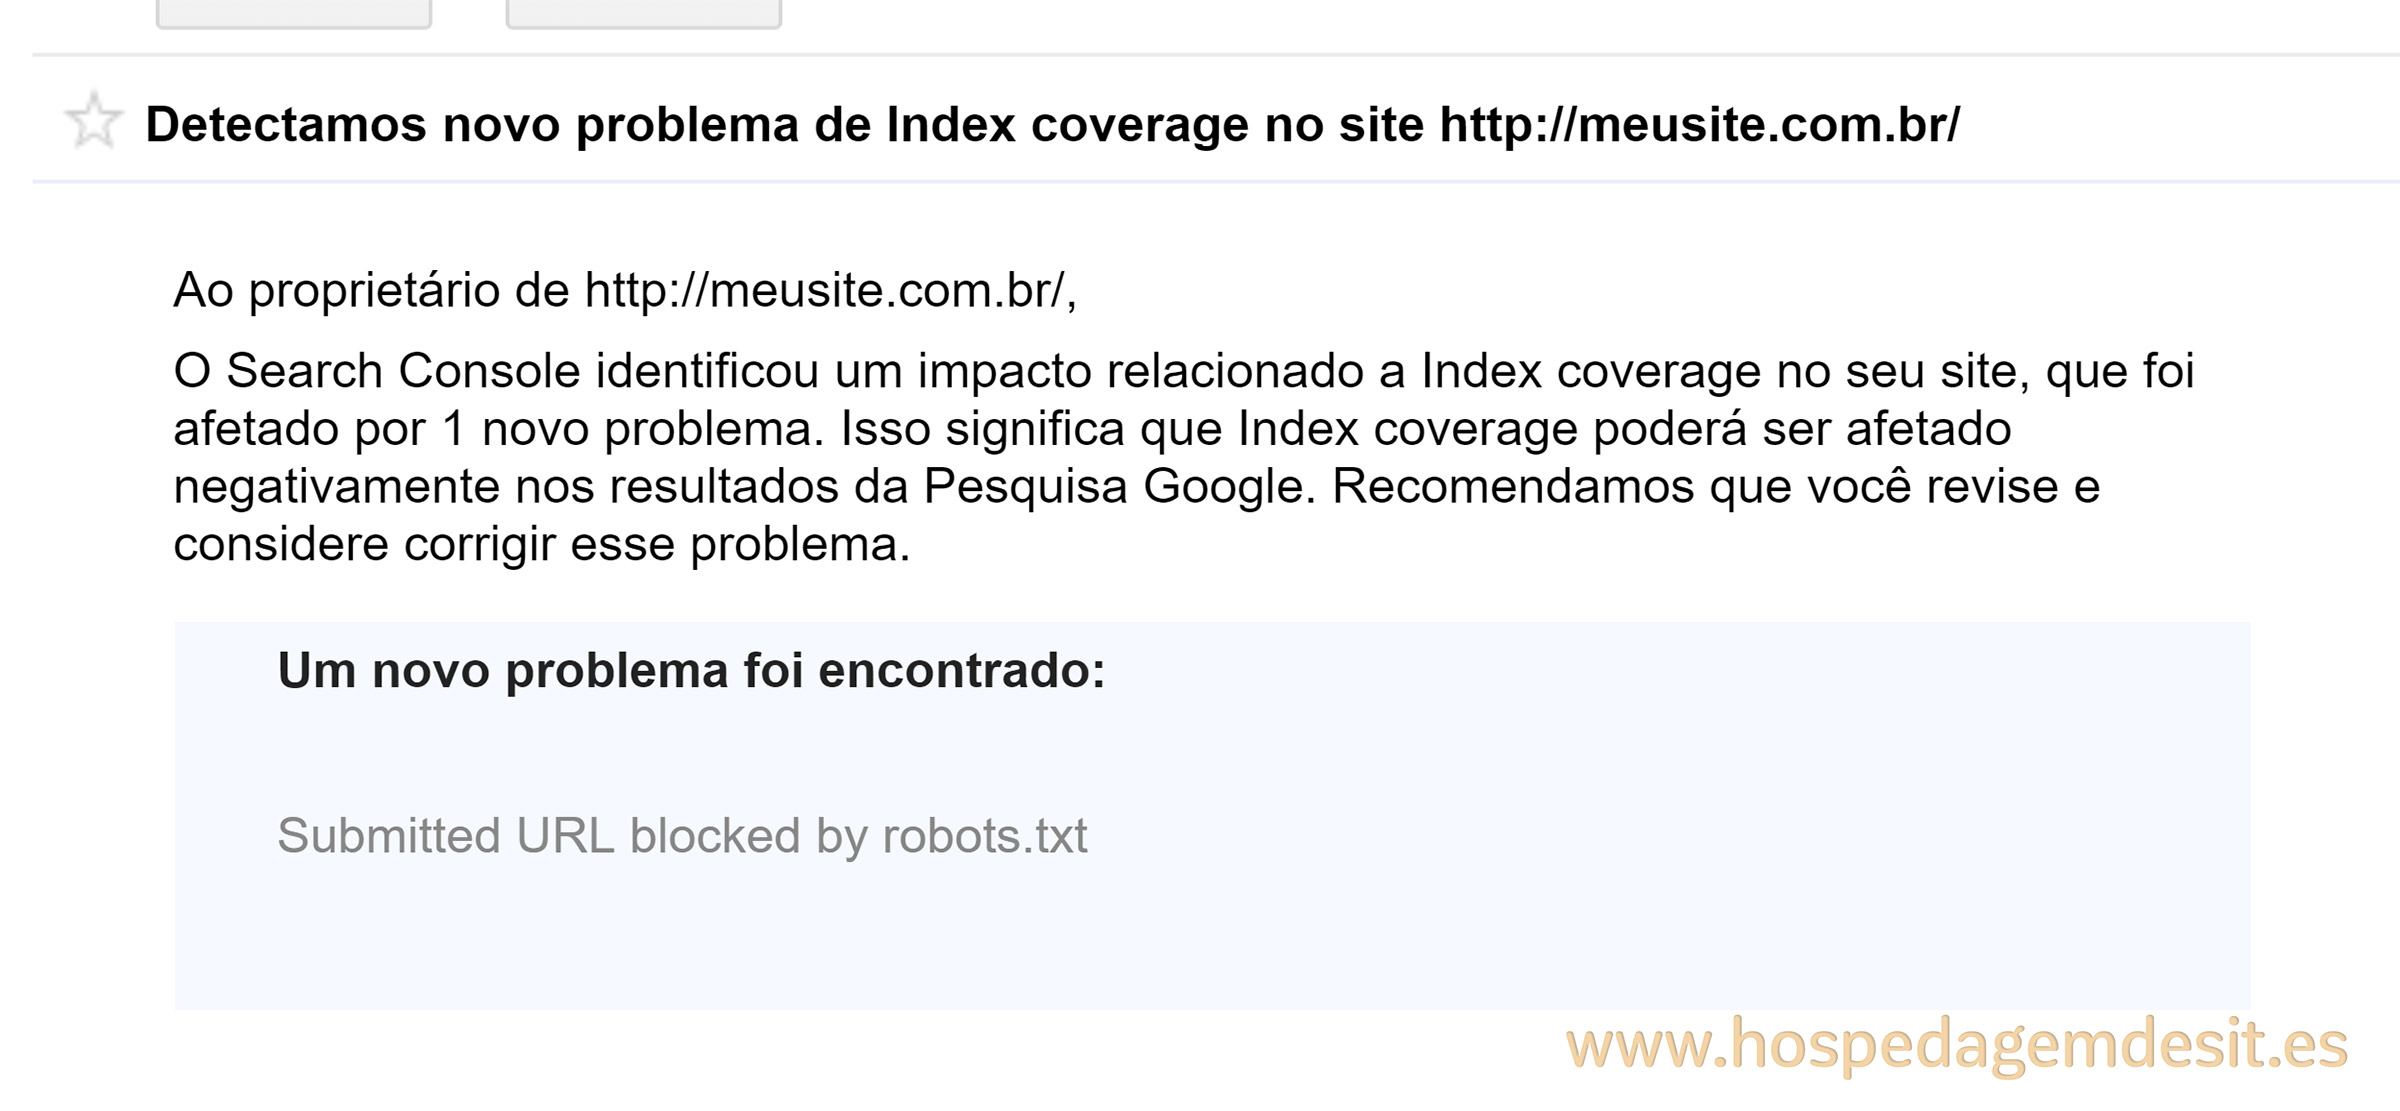 erro de index coverage url indexada bloqueada pelo robots.txt